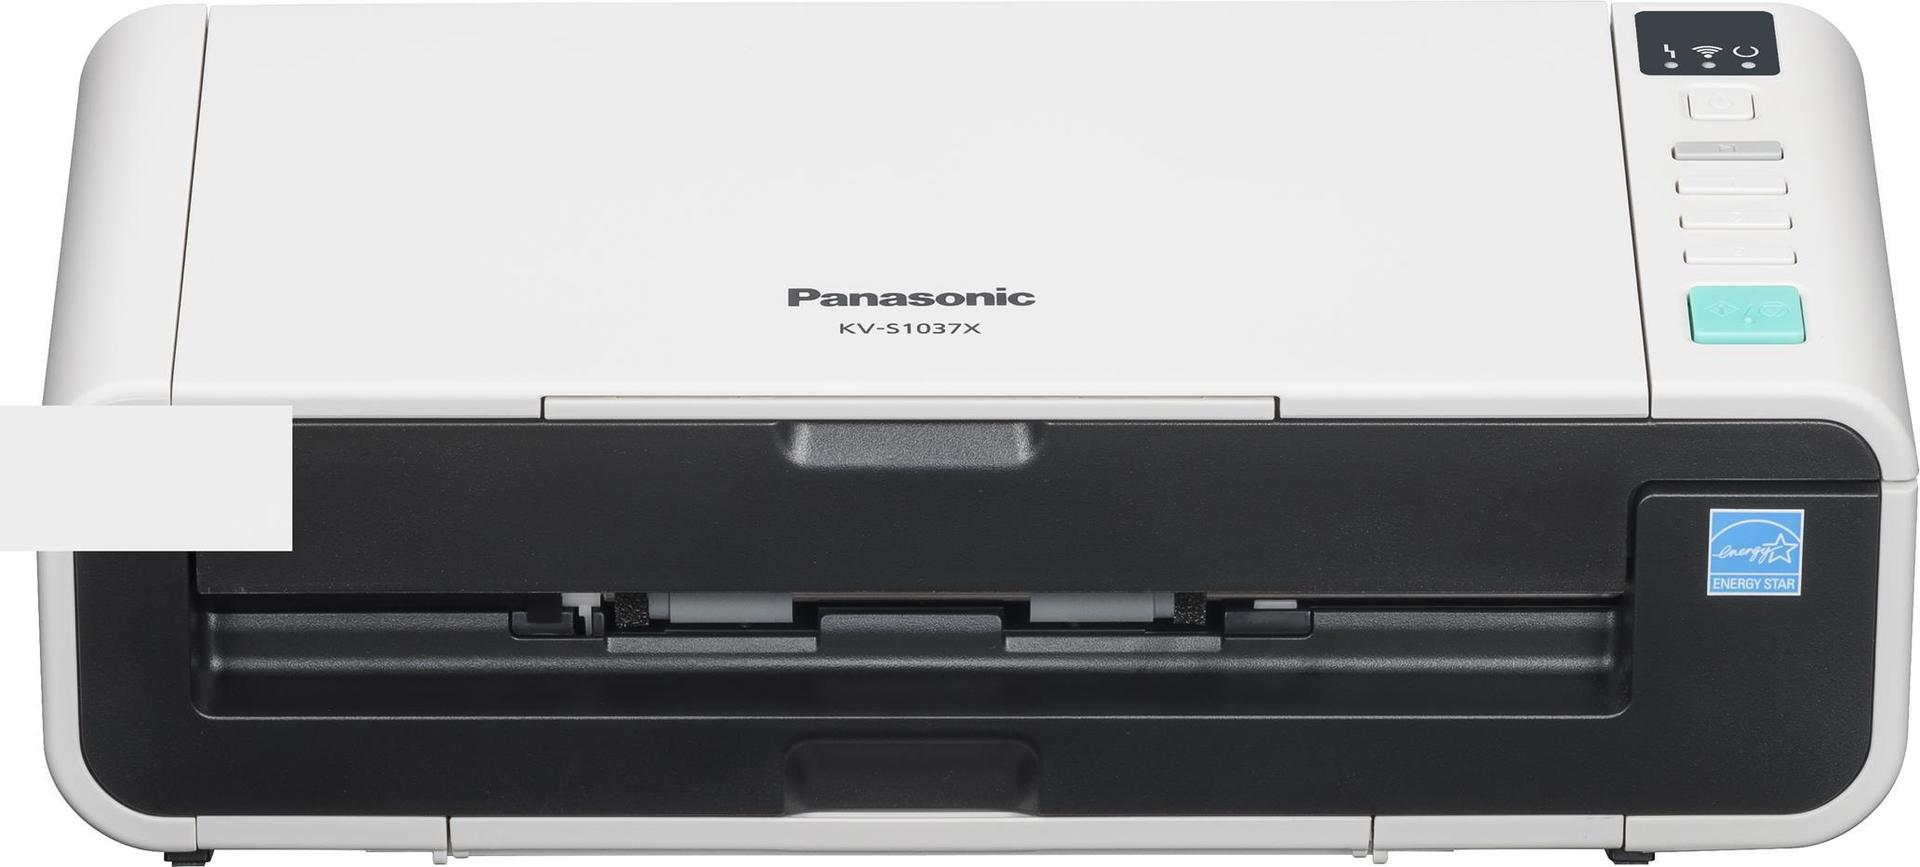 Panasonic KV-S1037X - Dokumentenscanner - Duplex - A4/Legal - 600 dpi - bis zu 30 Seiten/Min. (einfarbig) / bis zu 30 Seiten/Min. (Farbe) - automatischer Dokumenteneinzug (50 Blätter) - bis zu 3000 Scanvorgänge/Tag - Gigabit LAN, Wi-Fi, USB 3.1 Gen 1